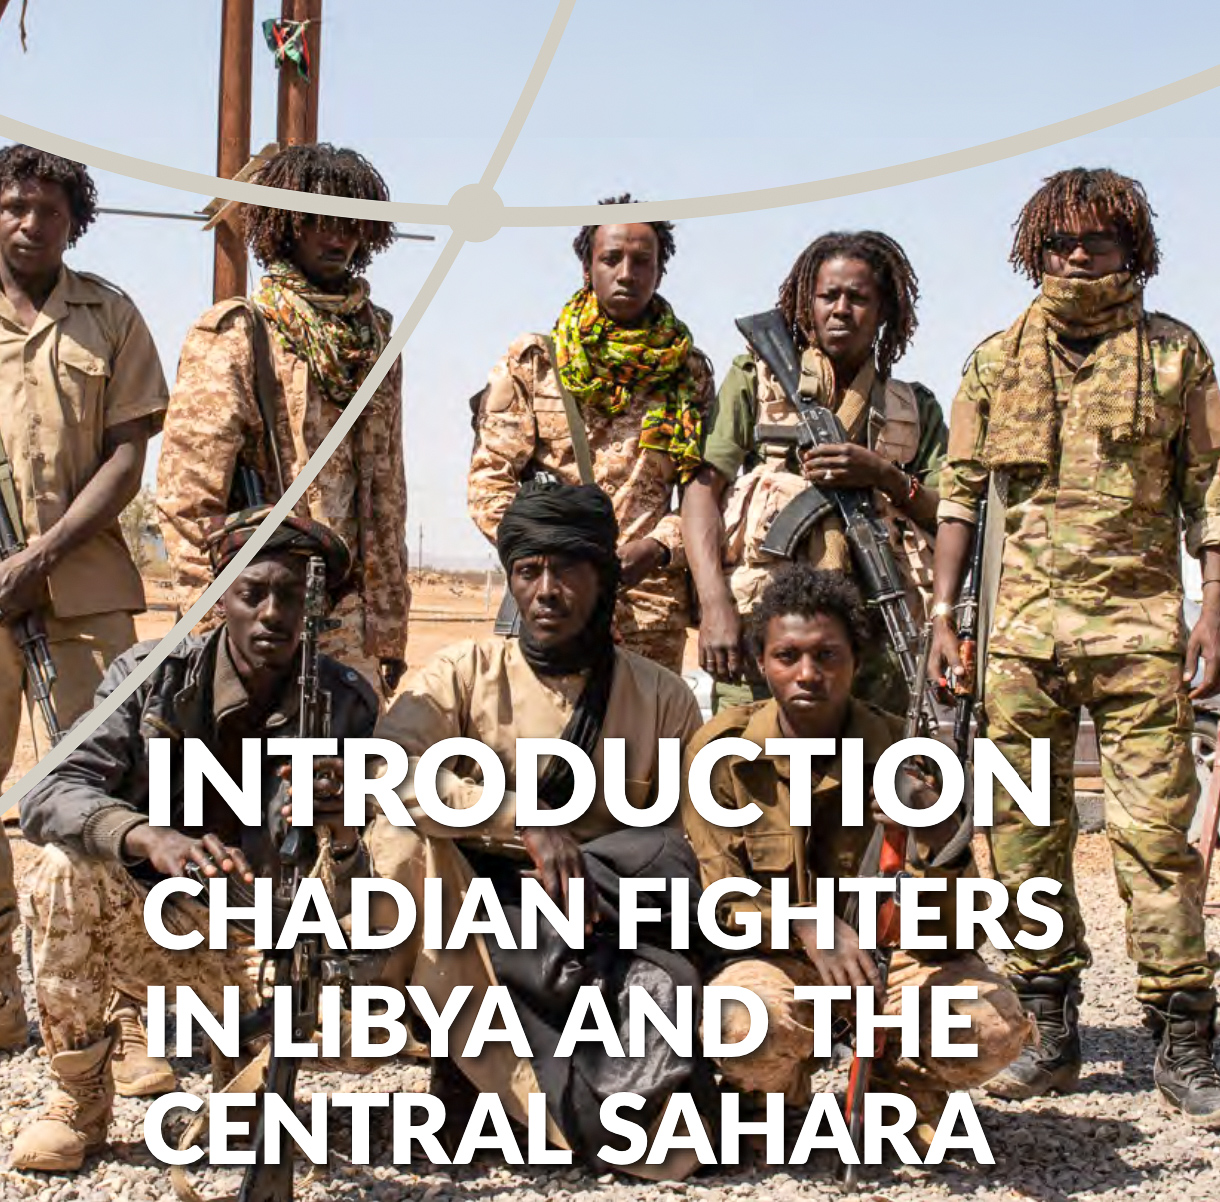 L’accord de cessez-le-feu poussera les combattants tchadiens à trouver de nouvelles bases en dehors du territoire libyen (rapport)